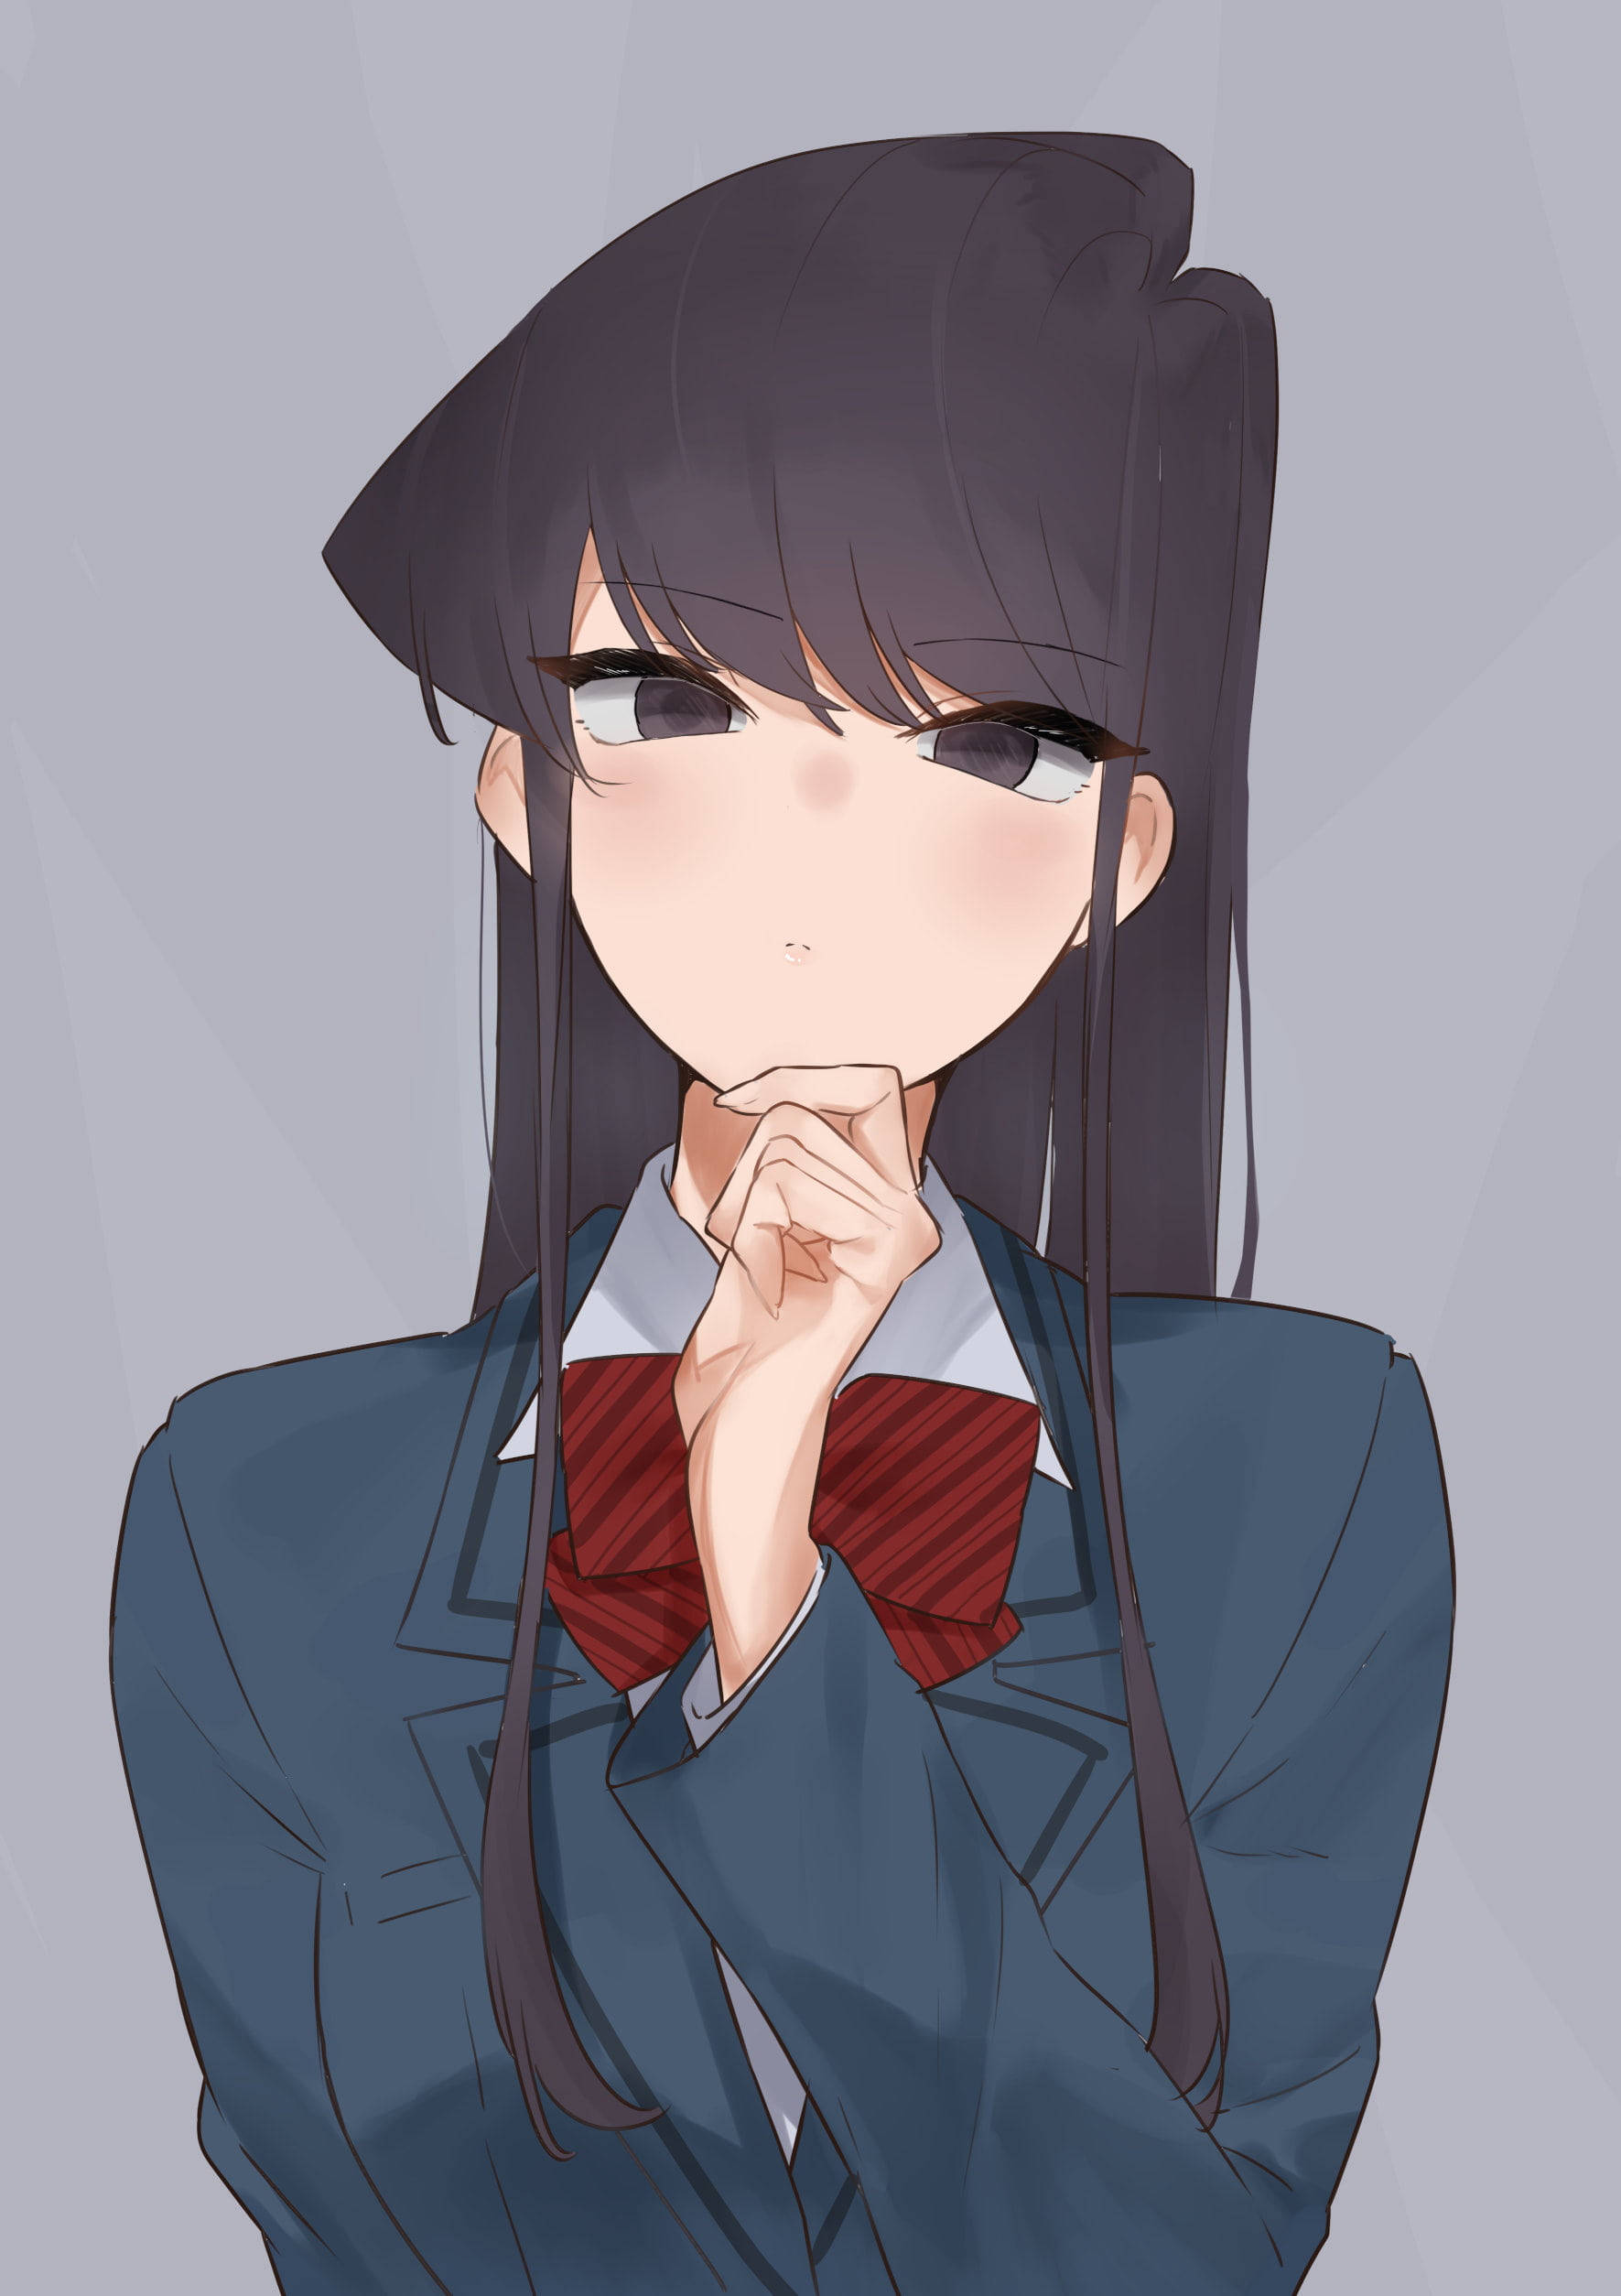 Komi San Quiet Schoolgirl Character Background